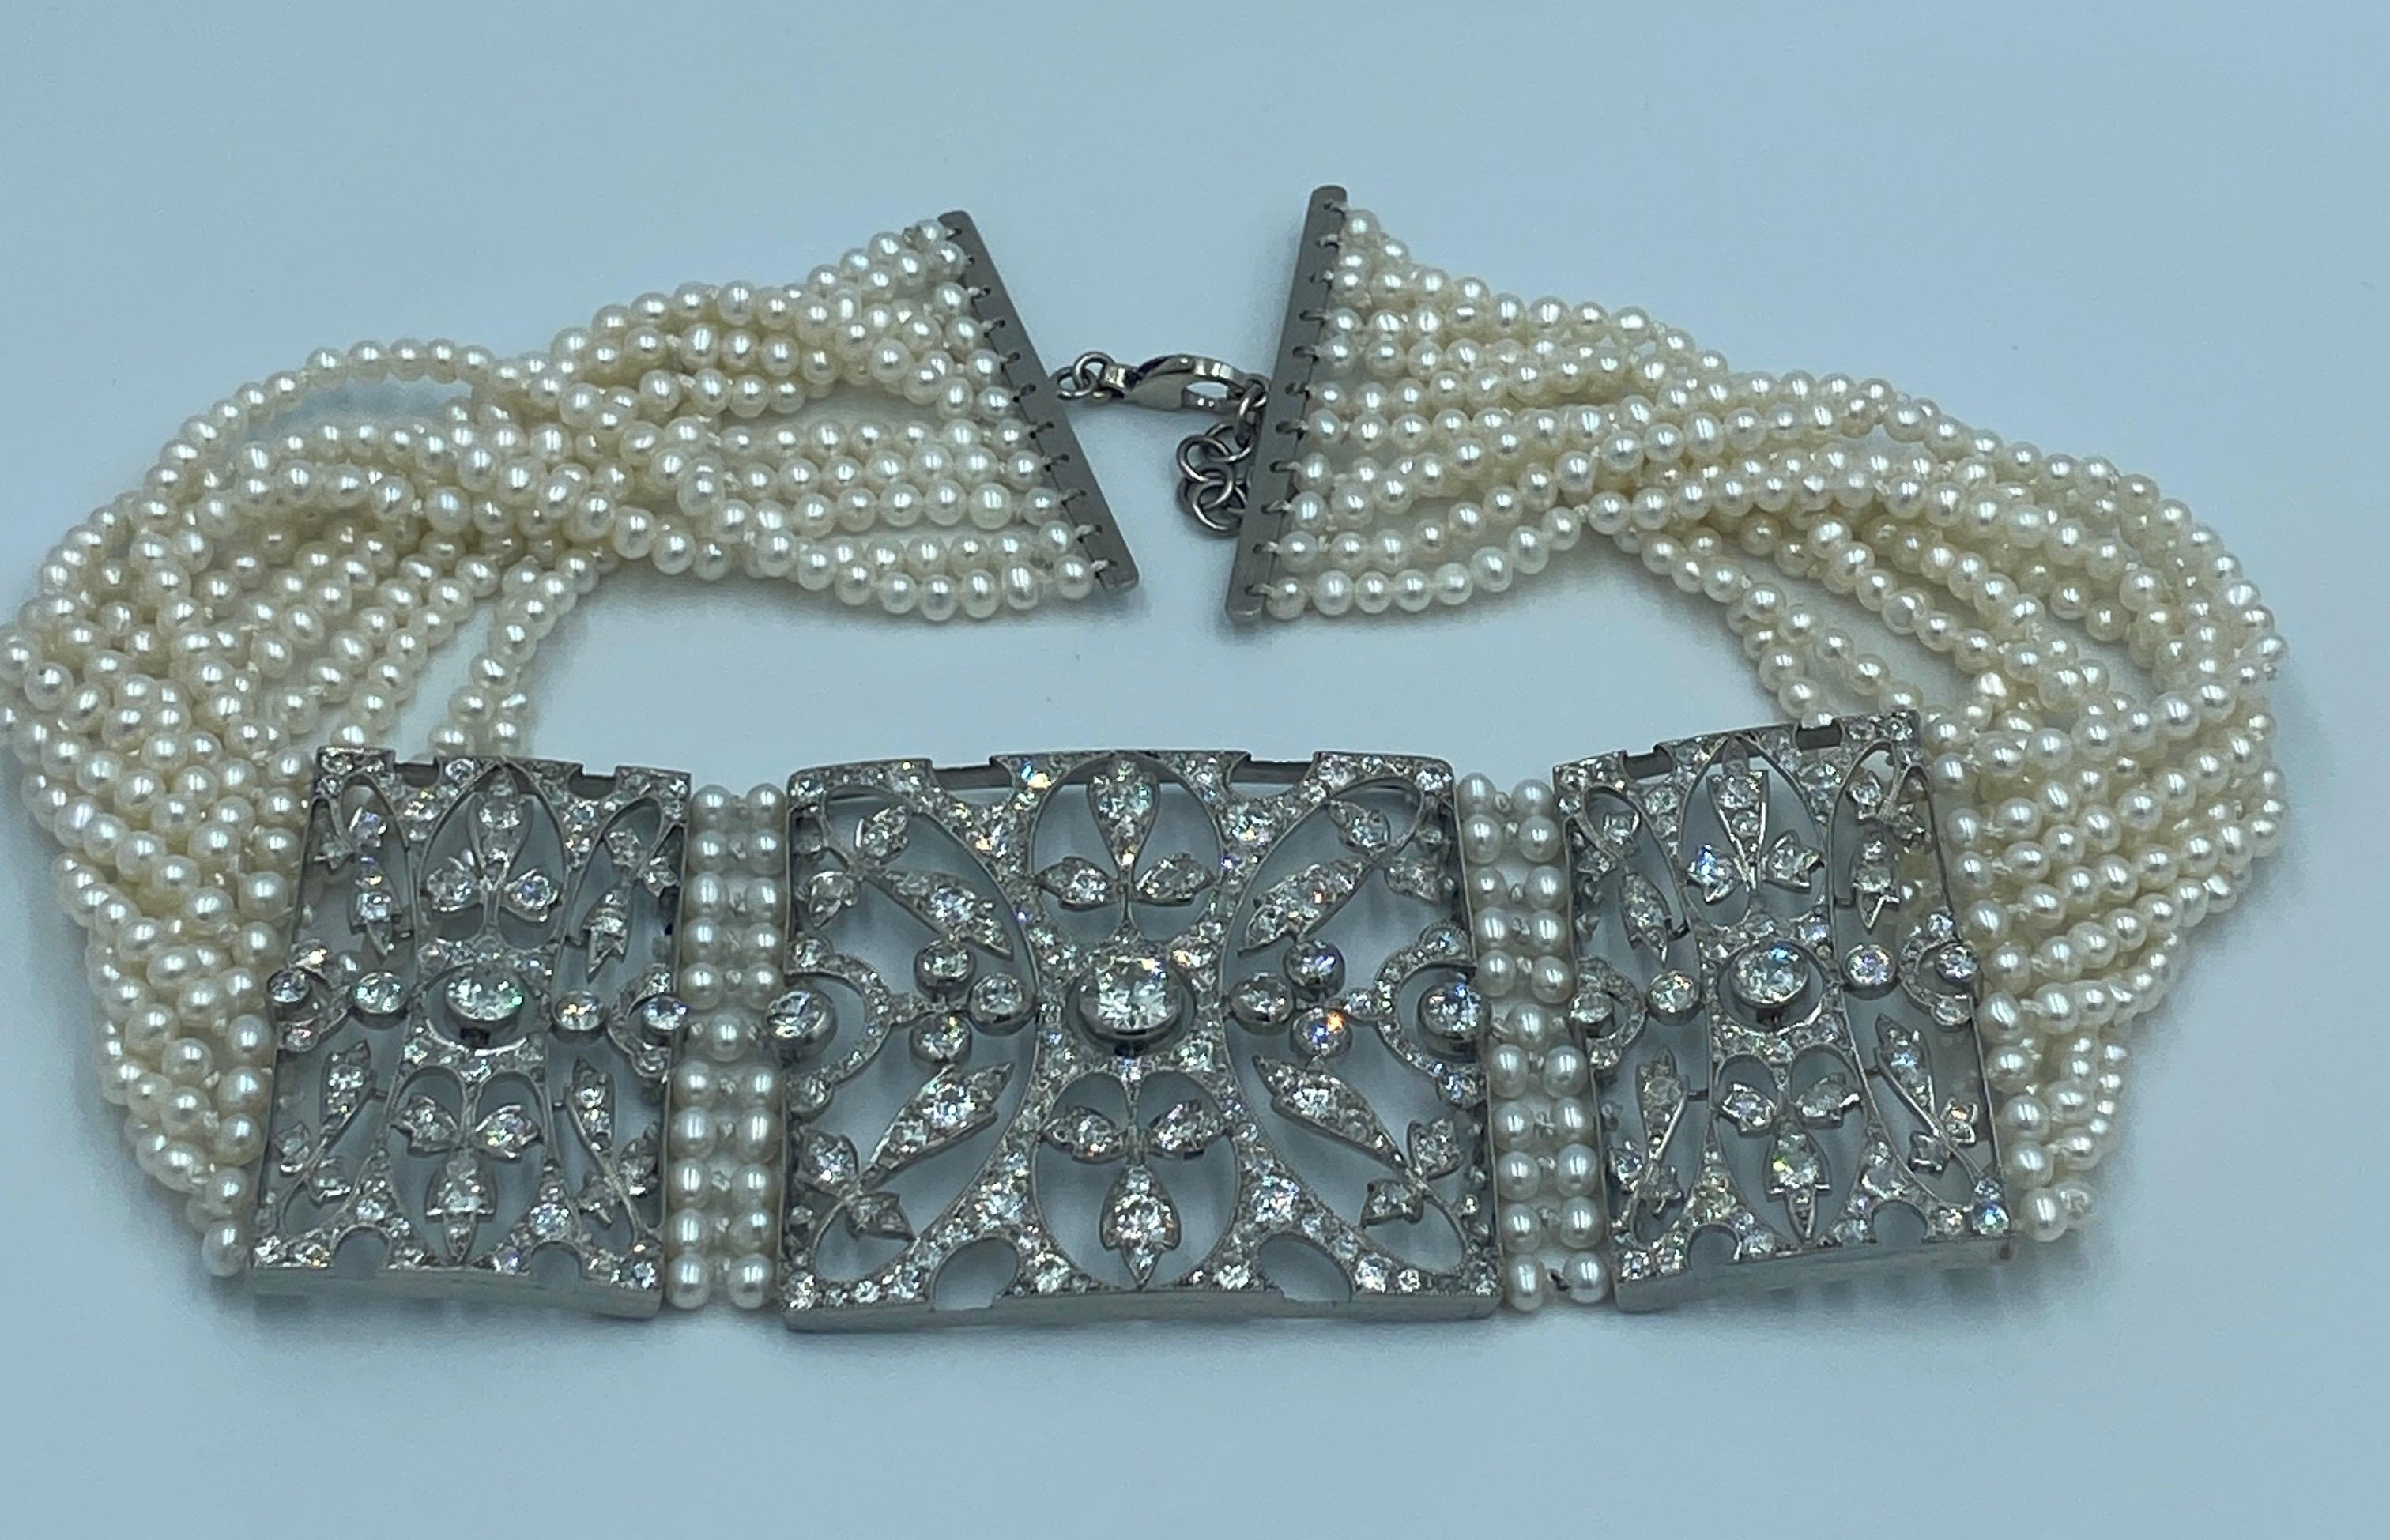 Dieses europäische Halsband aus den 1940er Jahren ist ein schönes Beispiel für Art-déco-Schmuck. Das Collier besteht aus etwa 10 Karat Diamanten, wobei der Mittelstein etwa 1,4 Karat wiegt. Die Diamanten sind im alten europäischen Schliff und in